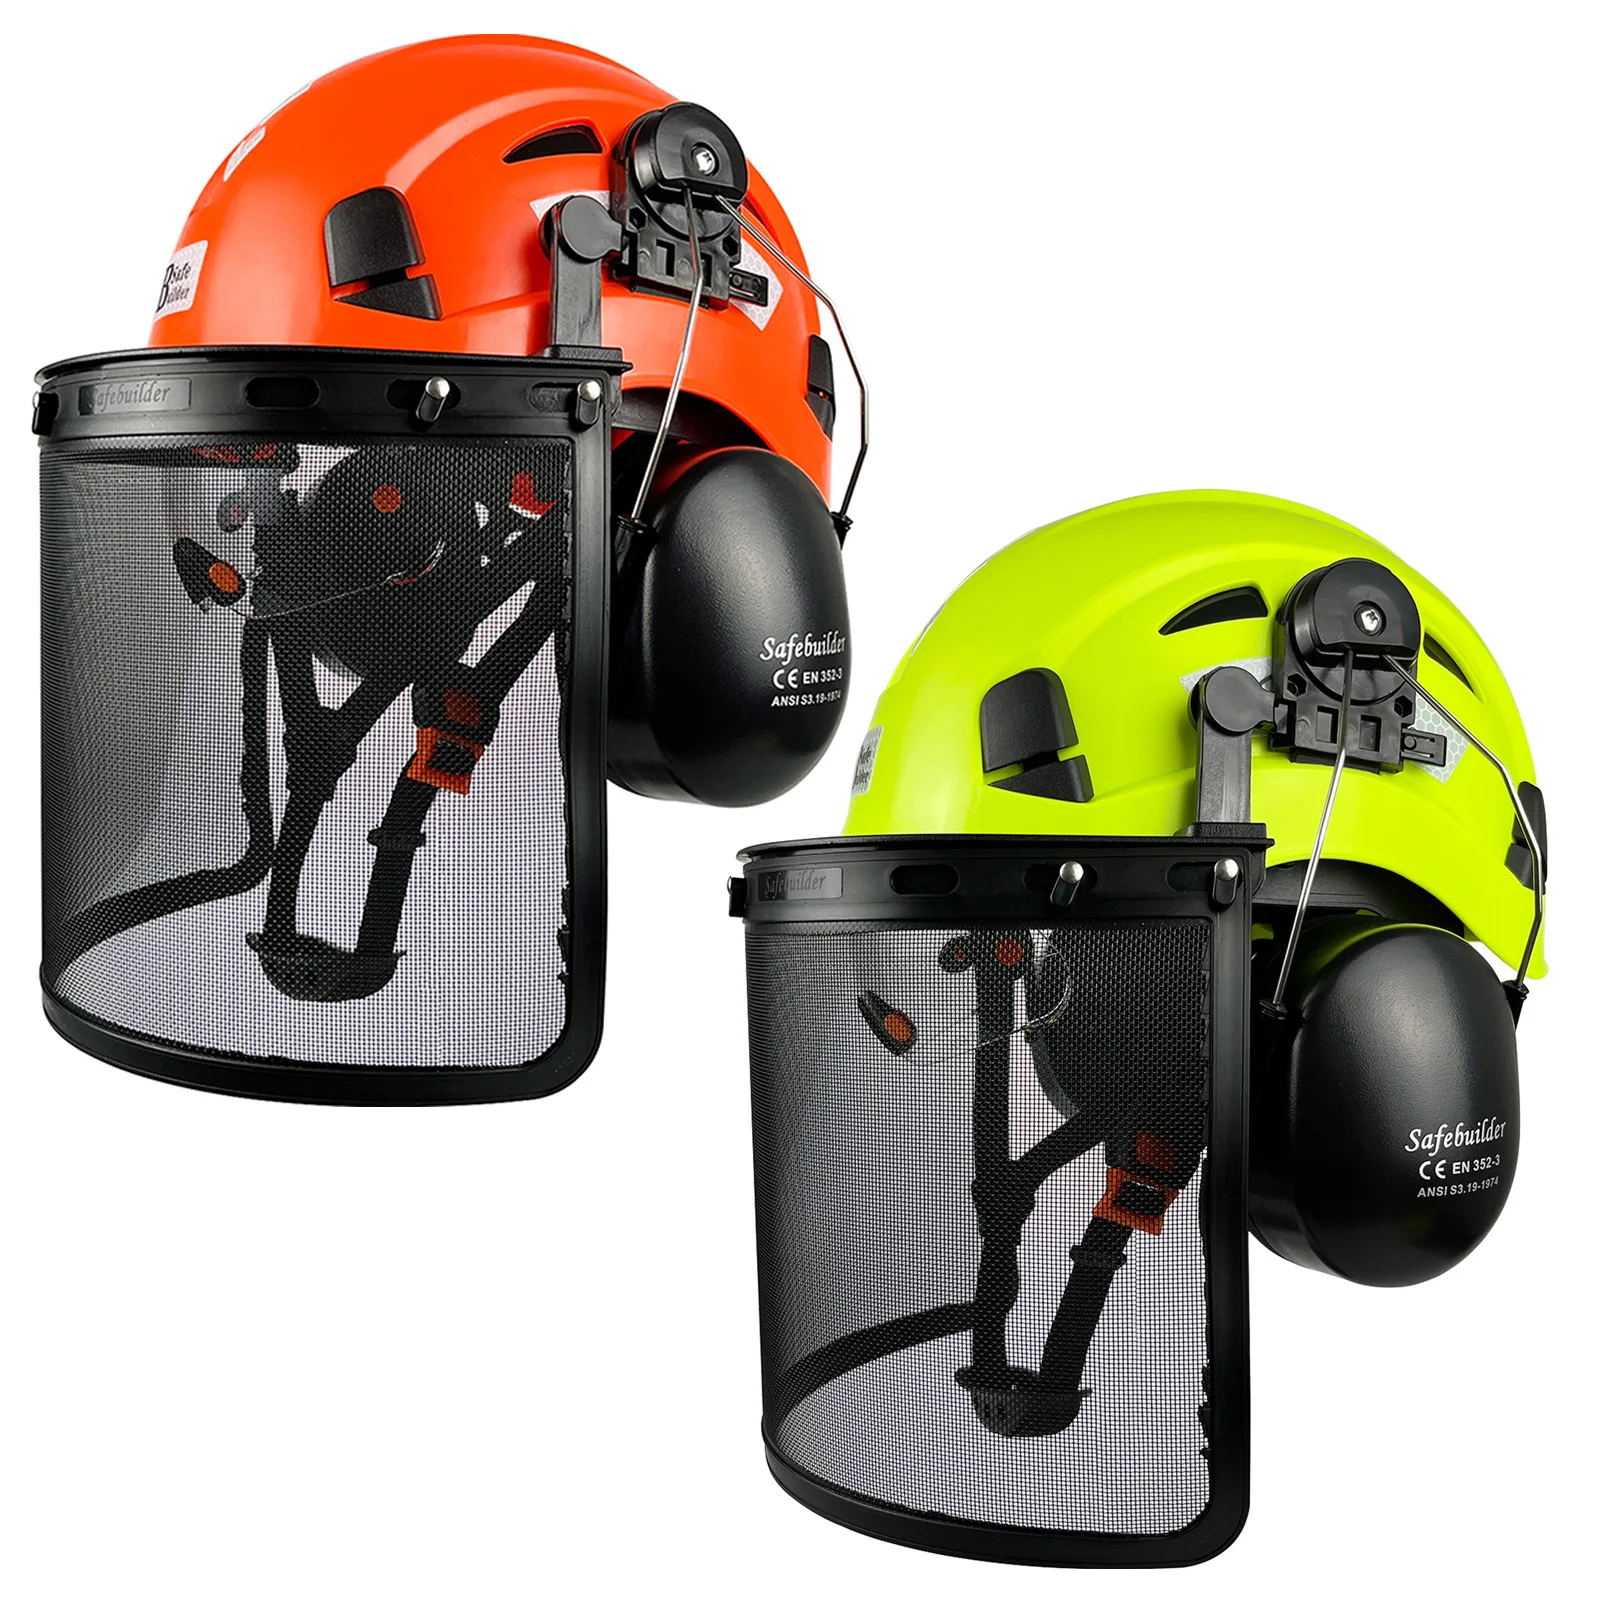 capacete-de-seguranca-com-viseira-melhor-florestal-industrial-protetor-facial-protetor-para-ombro-refletivo-motosserra-corte-madeira-chapeu-abs